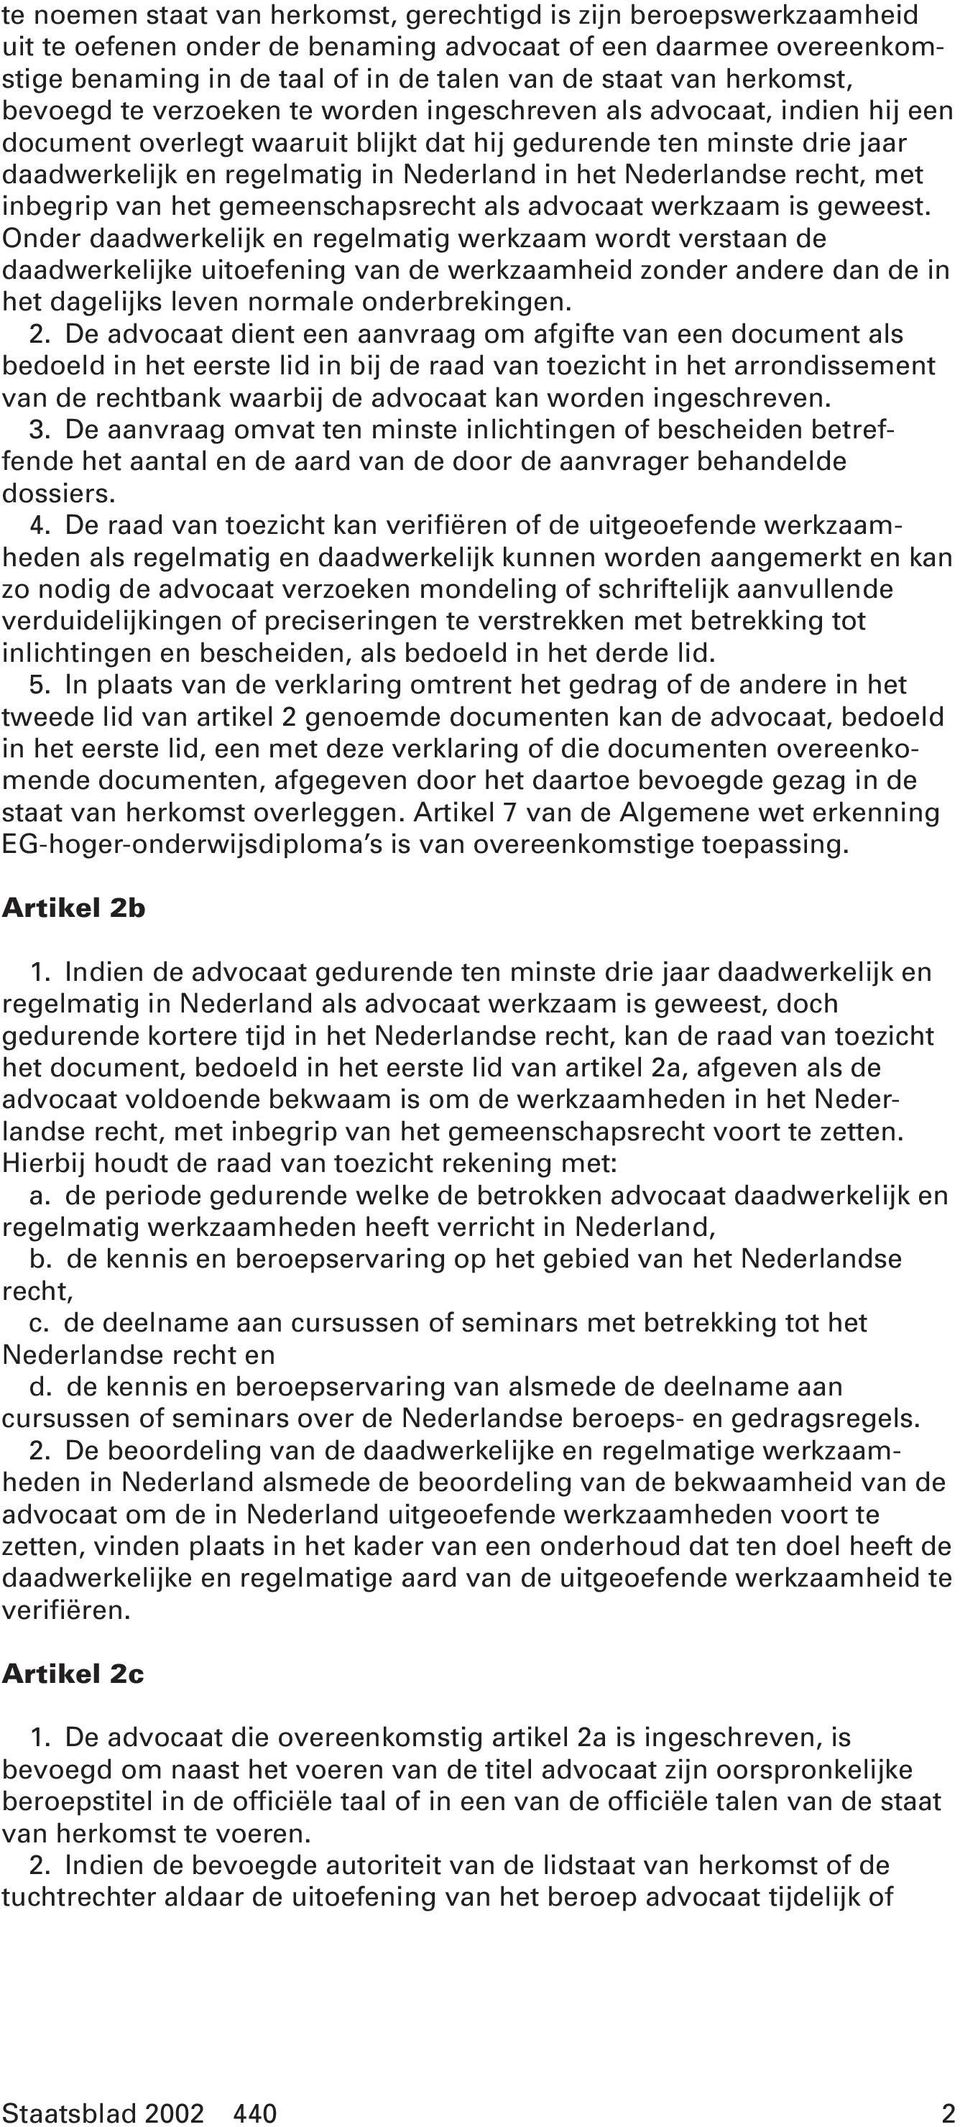 het Nederlandse recht, met inbegrip van het gemeenschapsrecht als advocaat werkzaam is geweest.